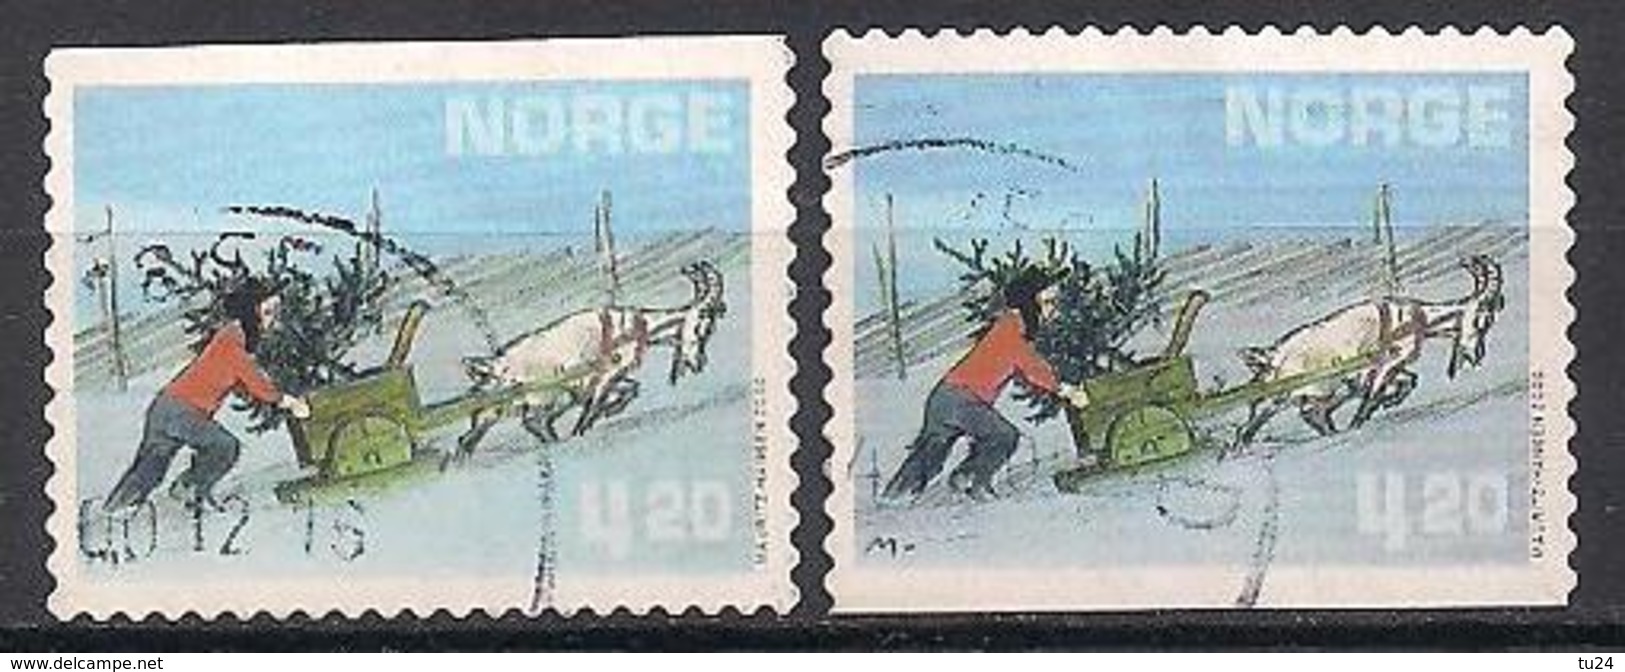 Norwegen  (2000)  Mi.Nr. 1362  Gest. / Used  (1ah12) - Gebraucht